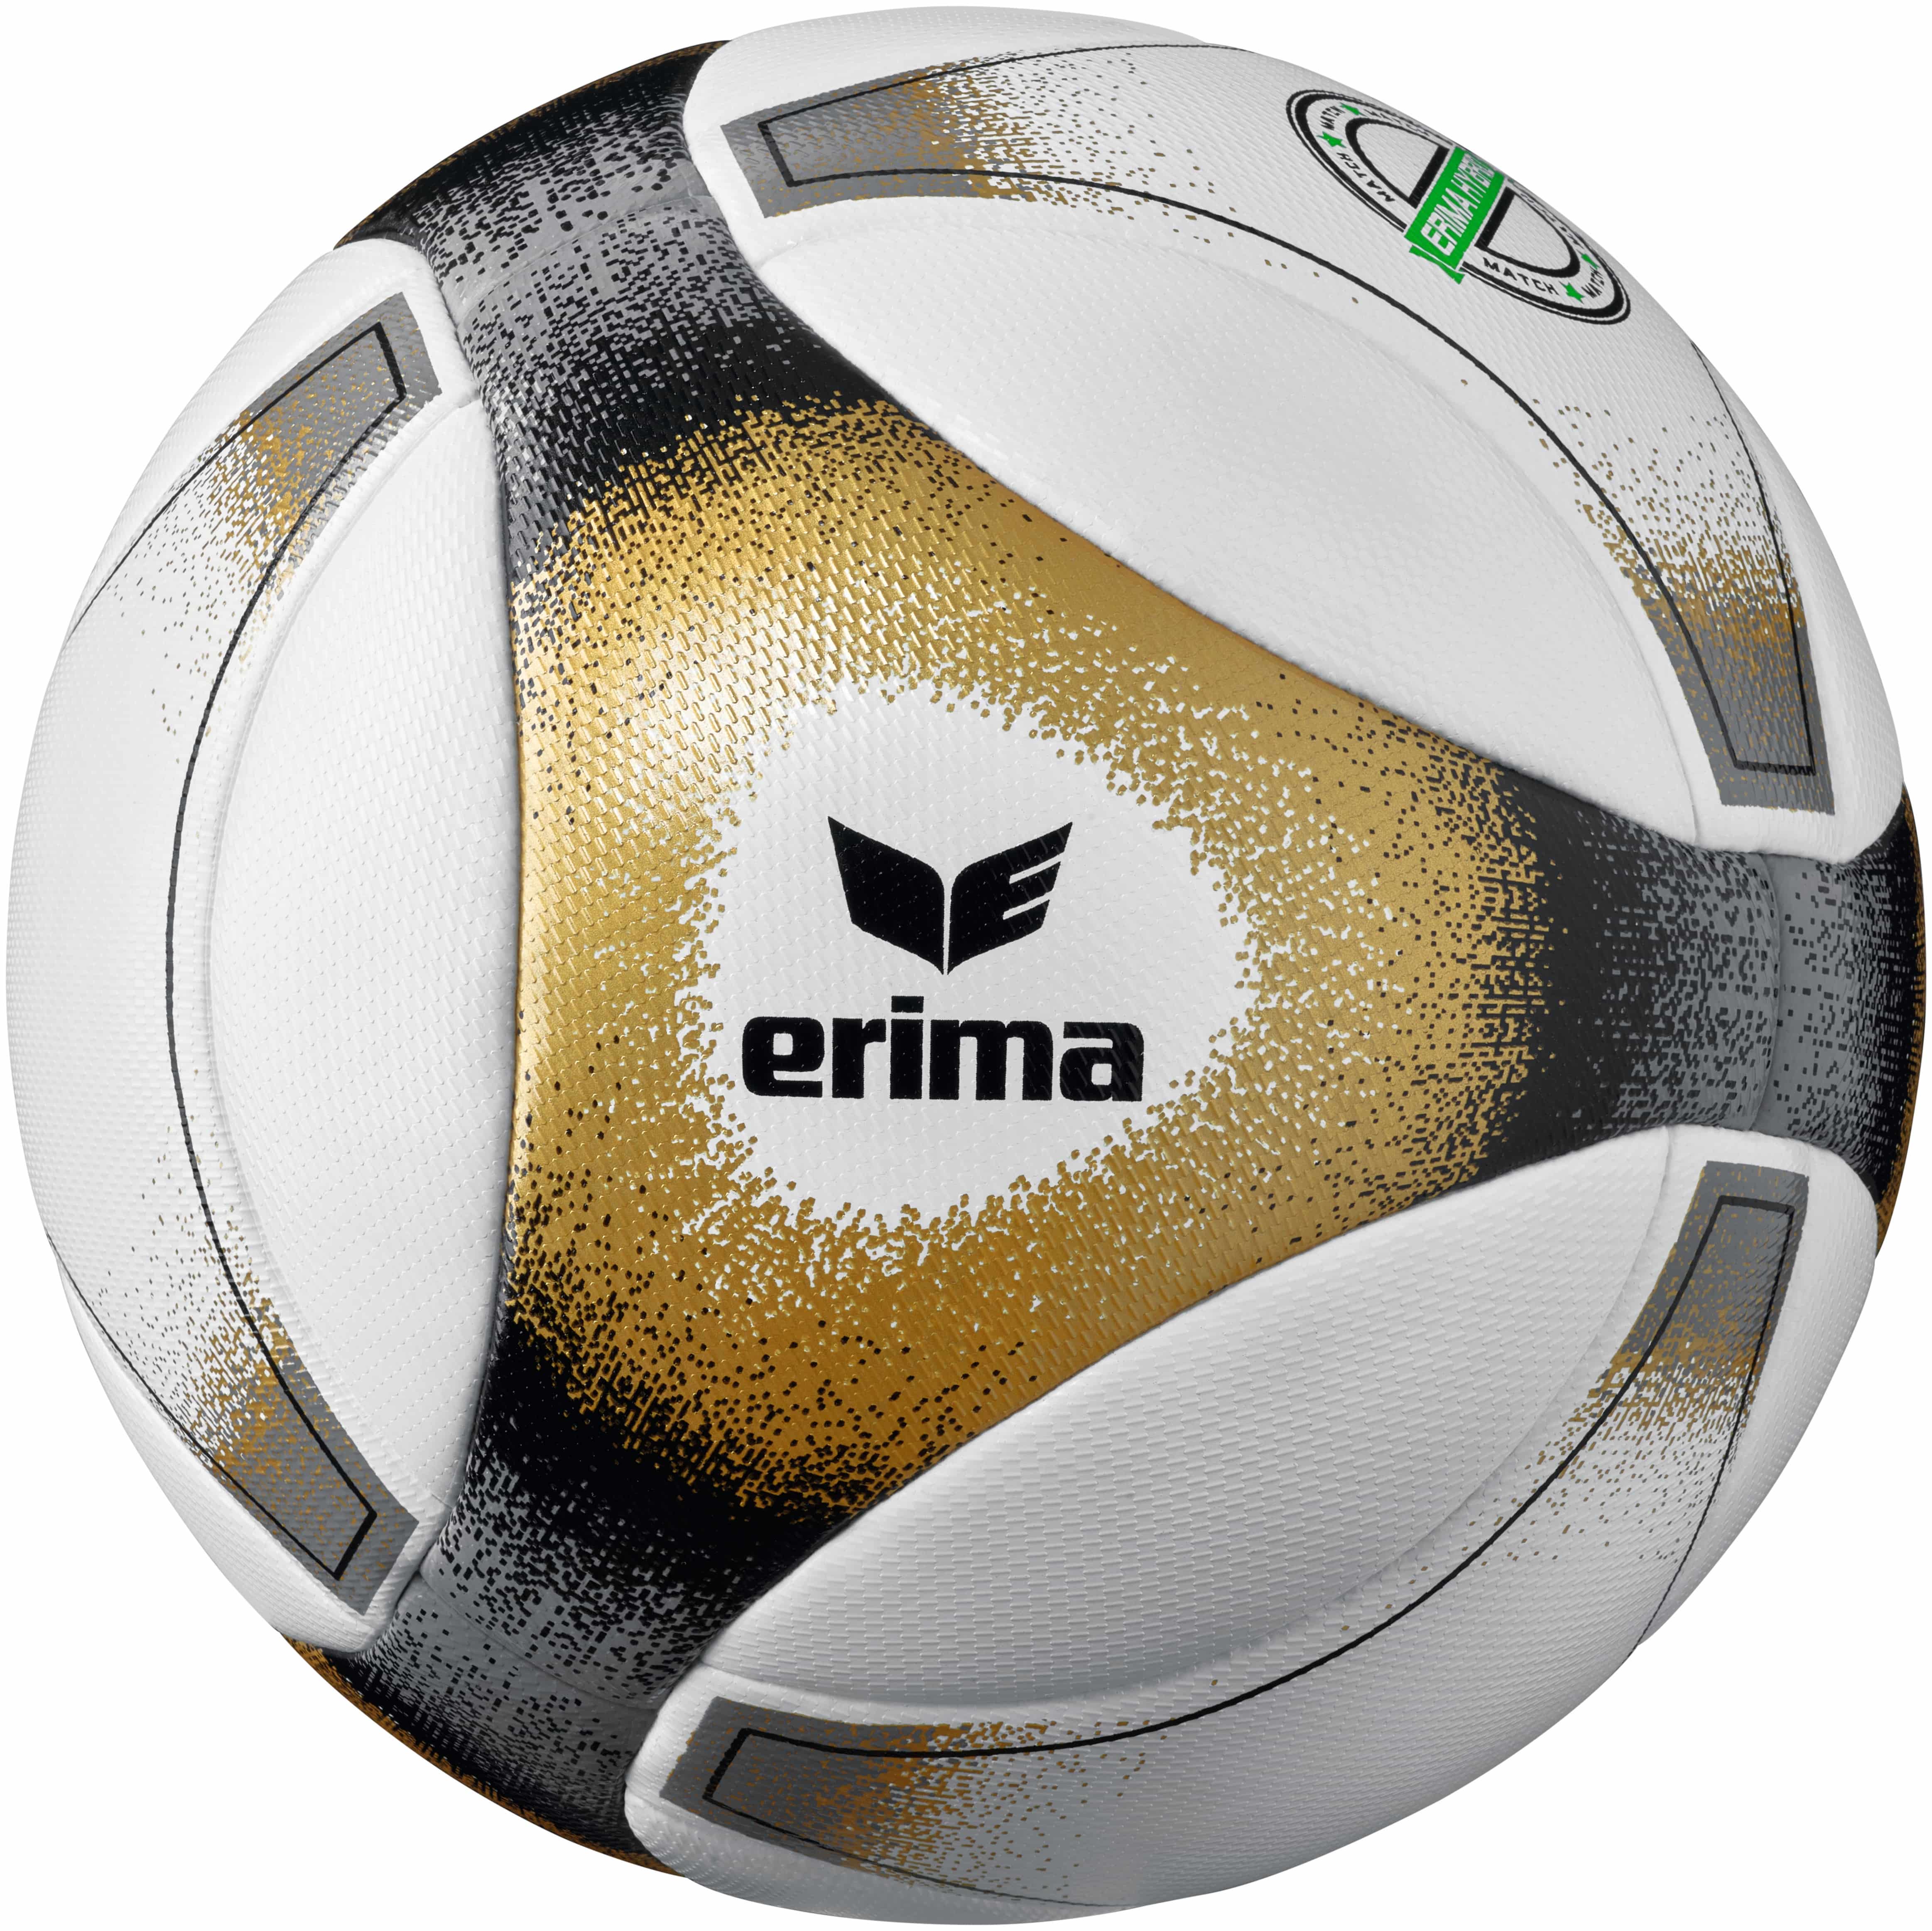 Erima Hybrid Match Fußball schwarz-gold